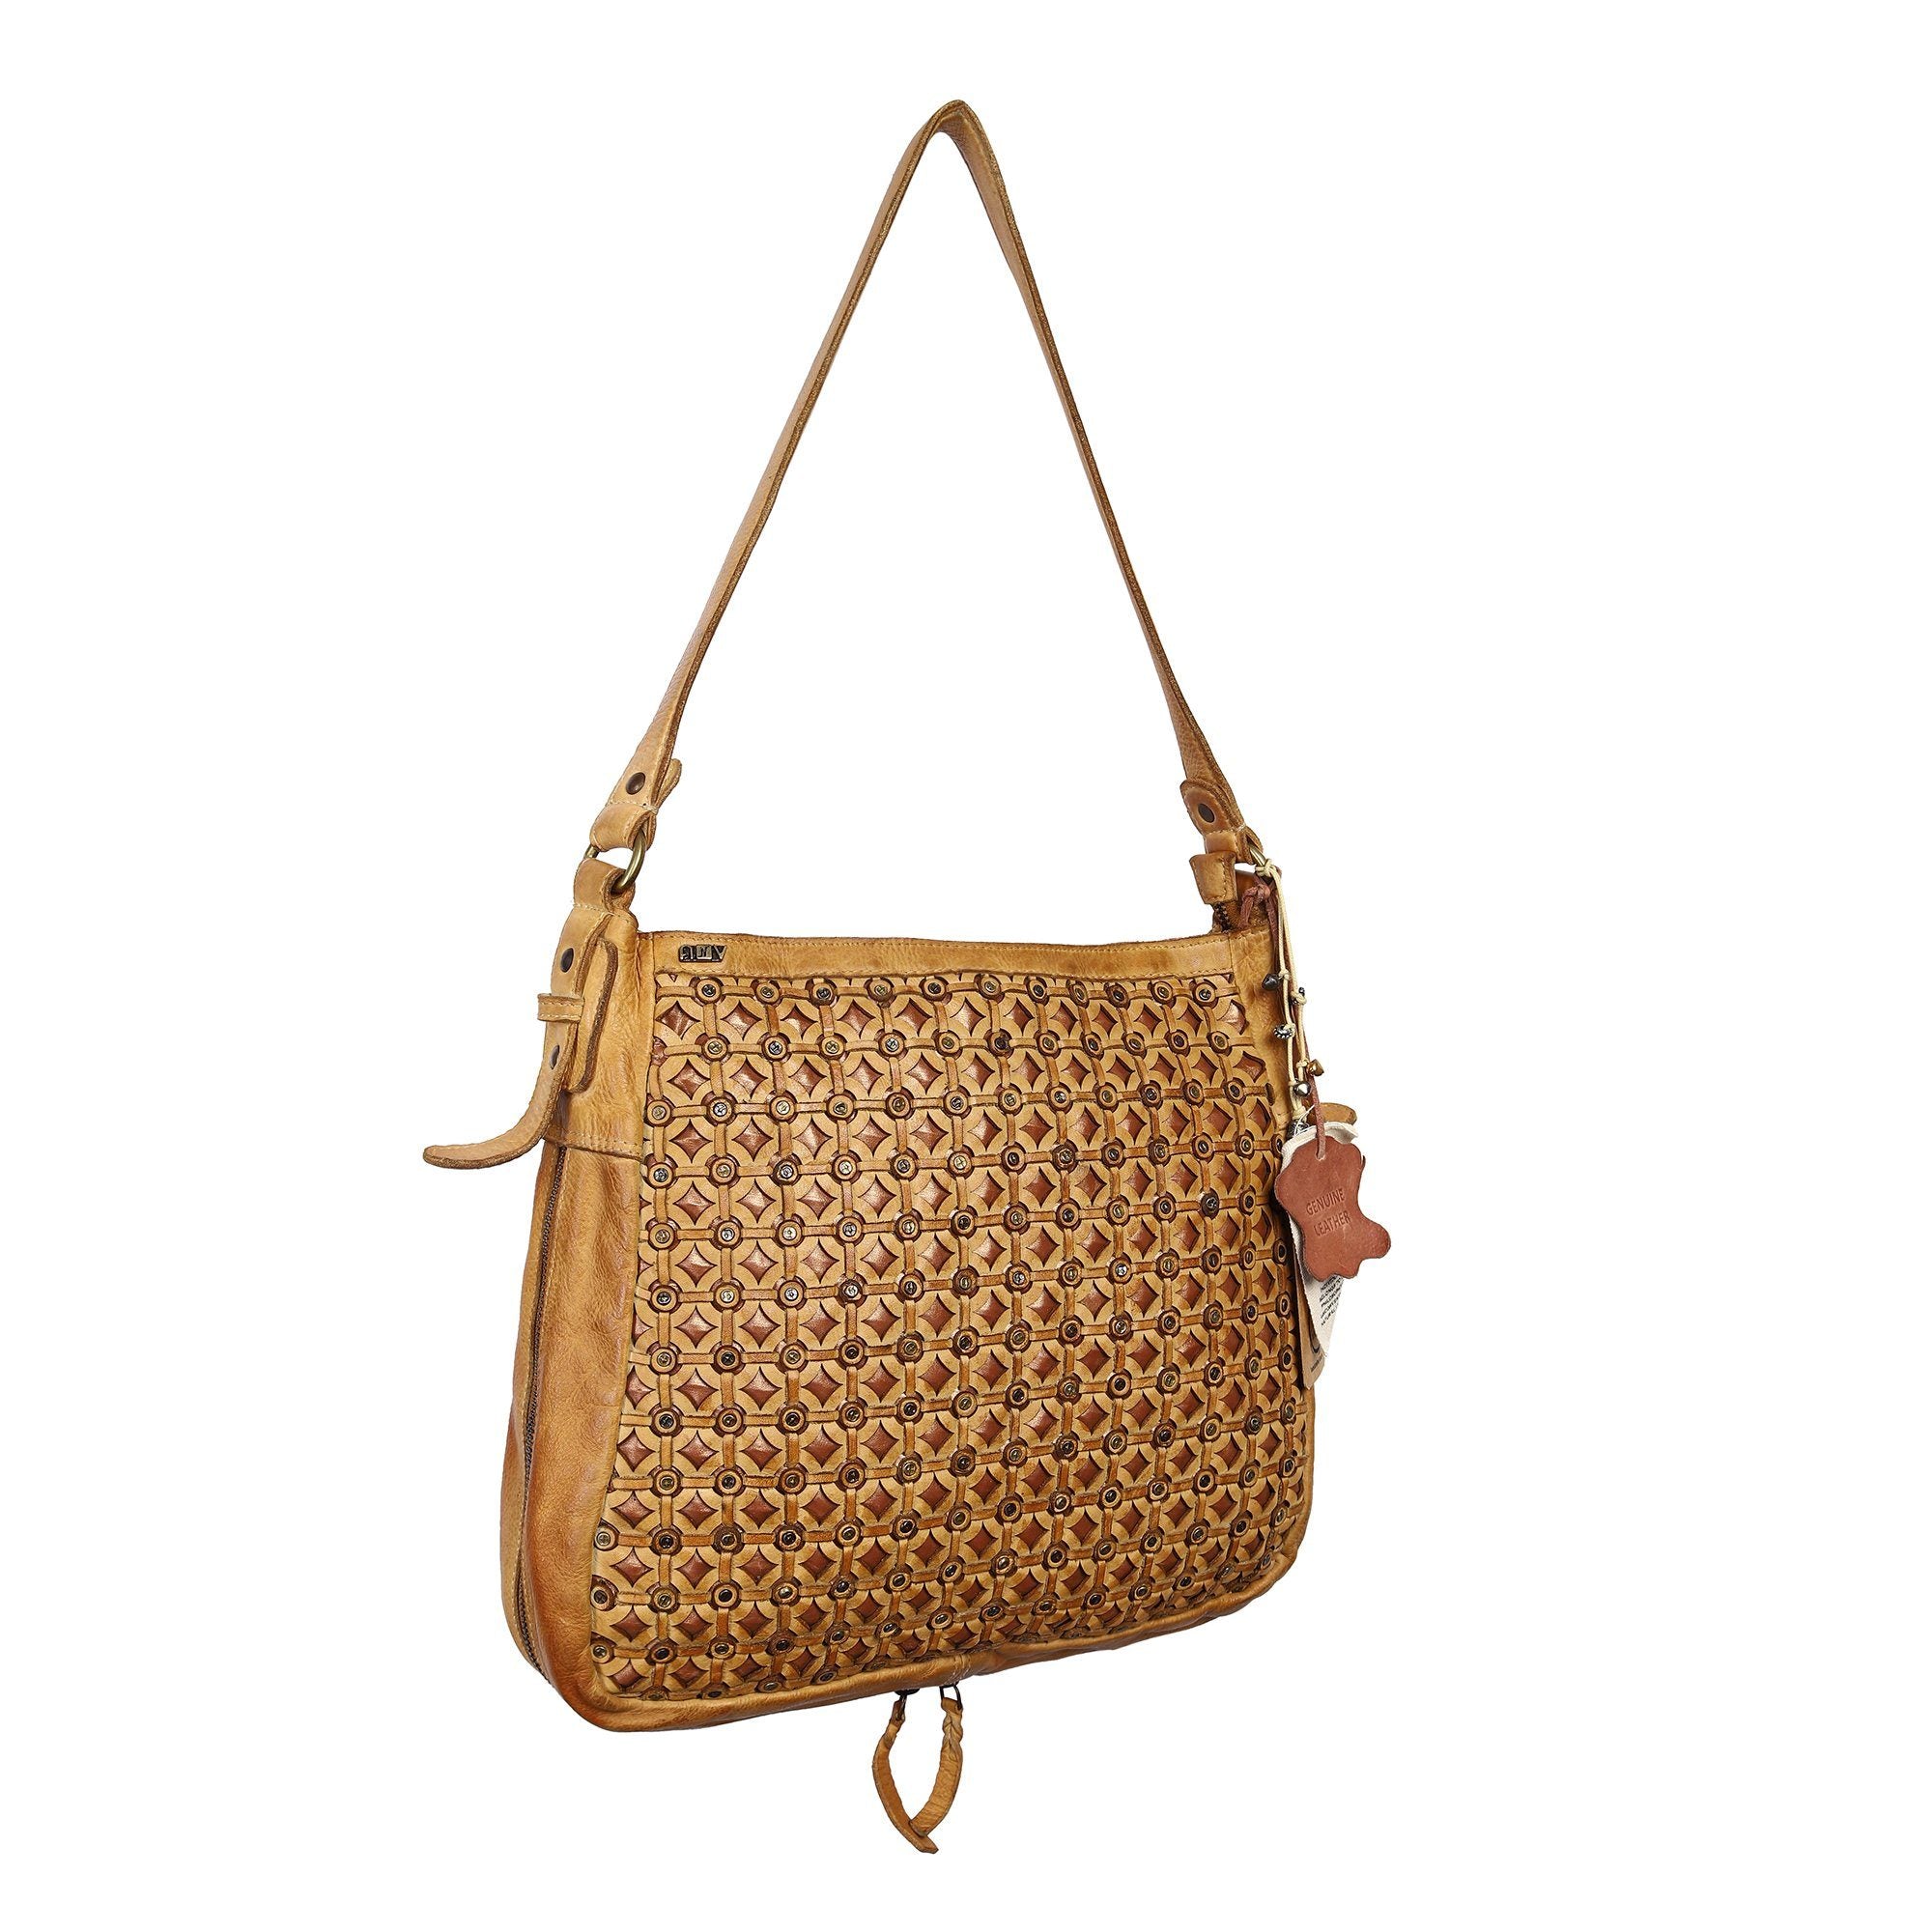 Tesoro Designer Bag: Yellow leather shoulder bag with rivet deatil by Art N Vintage